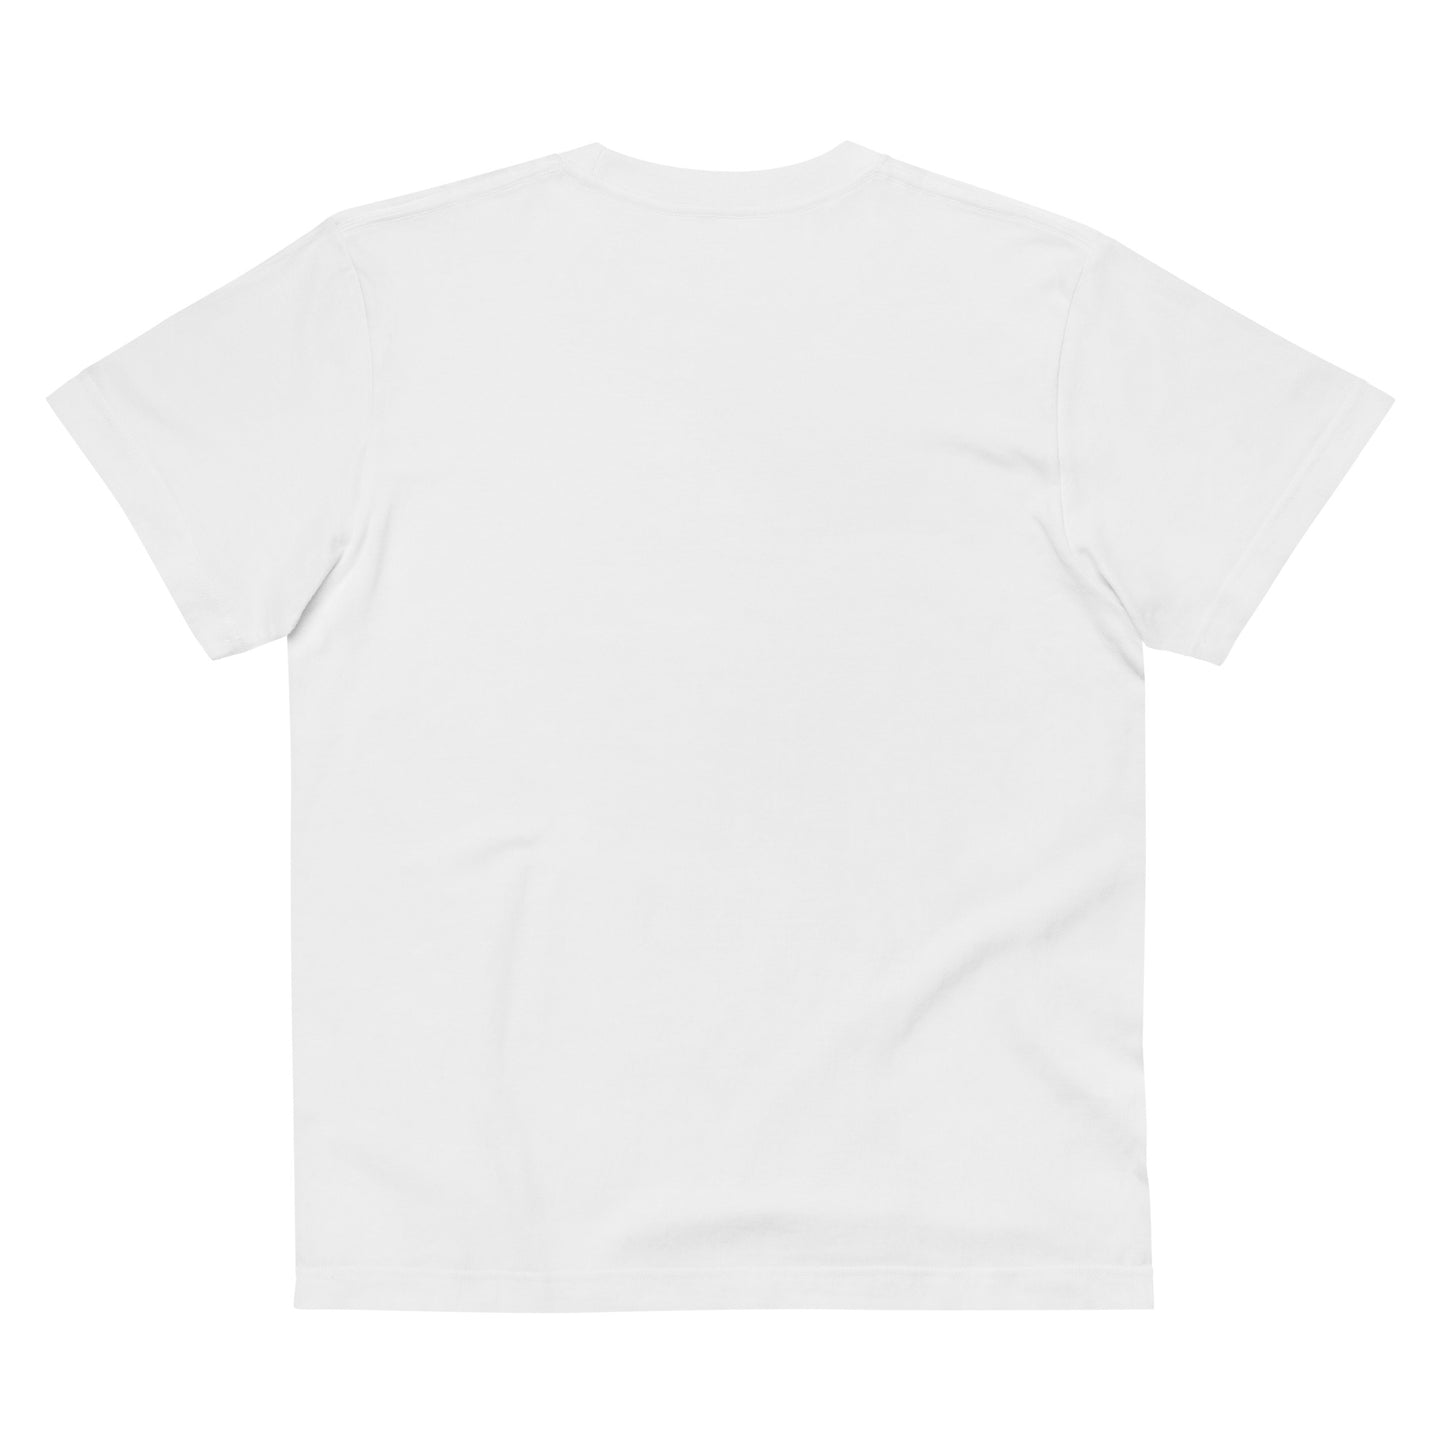 P010 - 高品質コットンTシャツ (Get set!：ホワイト/ブラック)